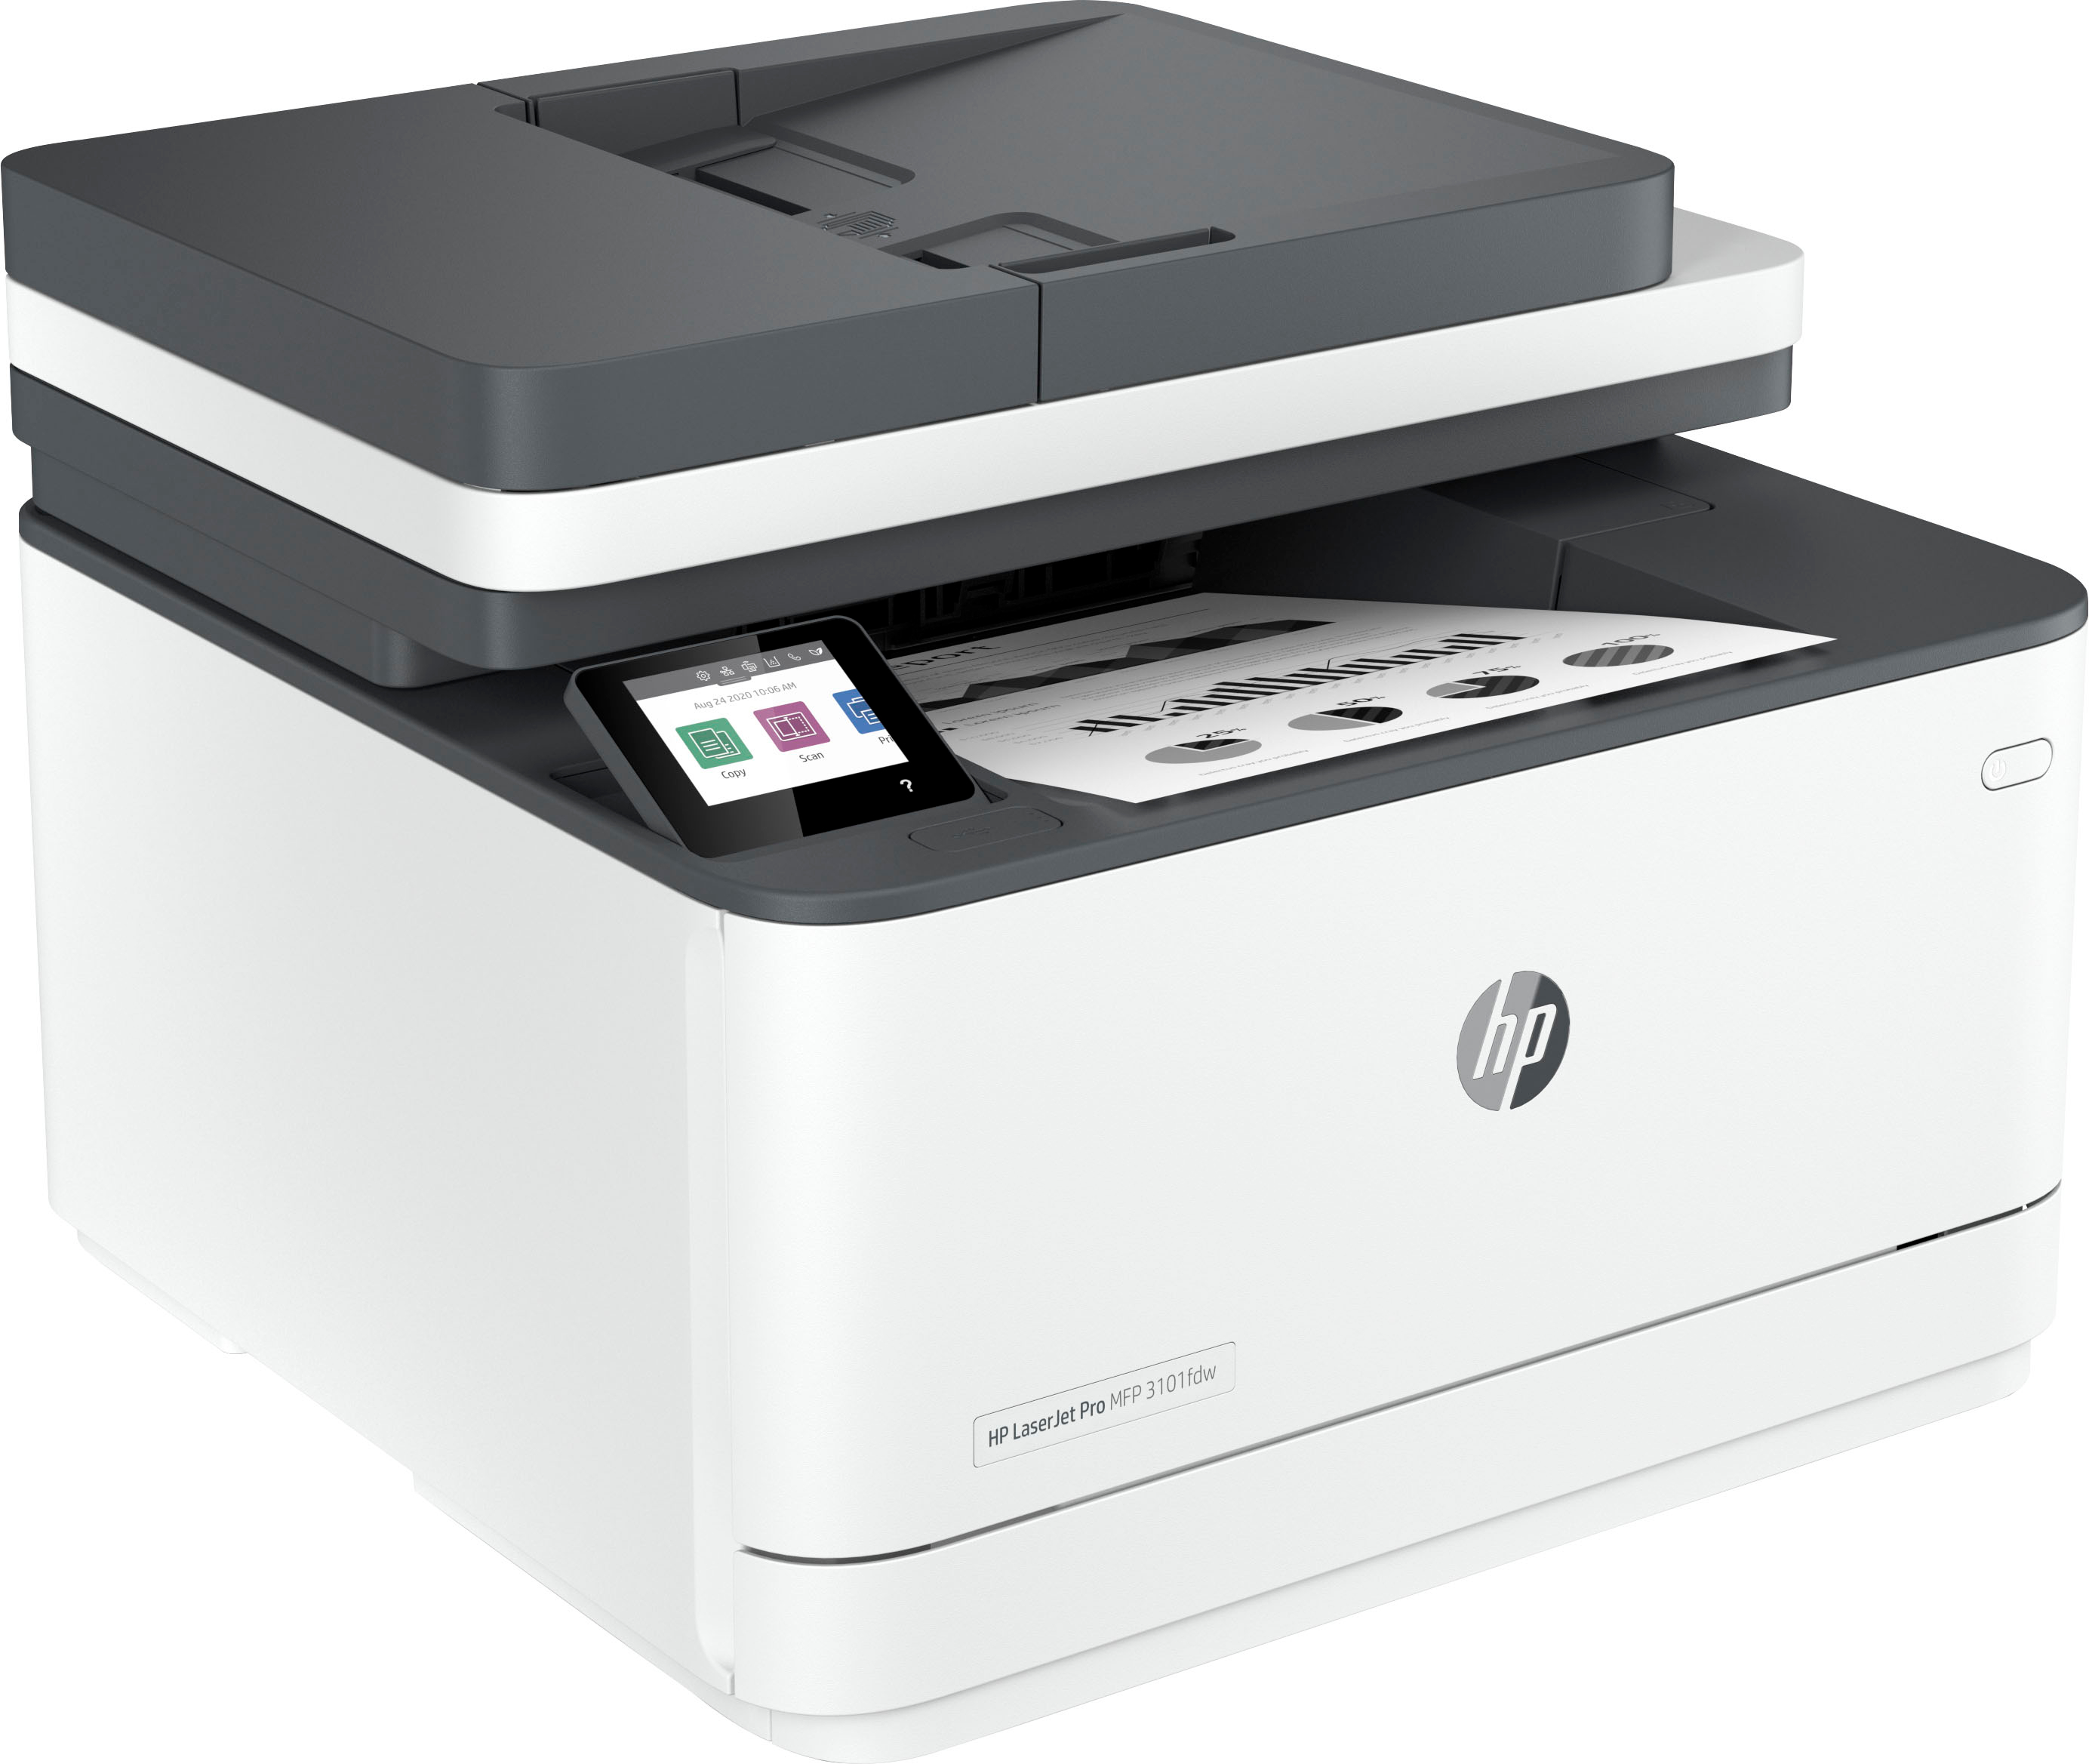 HP LaserJet Pro MFP 4101fdw Wireless Black-and-White All-in-One Laser  Printer White HP LaserJet Pro MFP 4101fdw - Best Buy